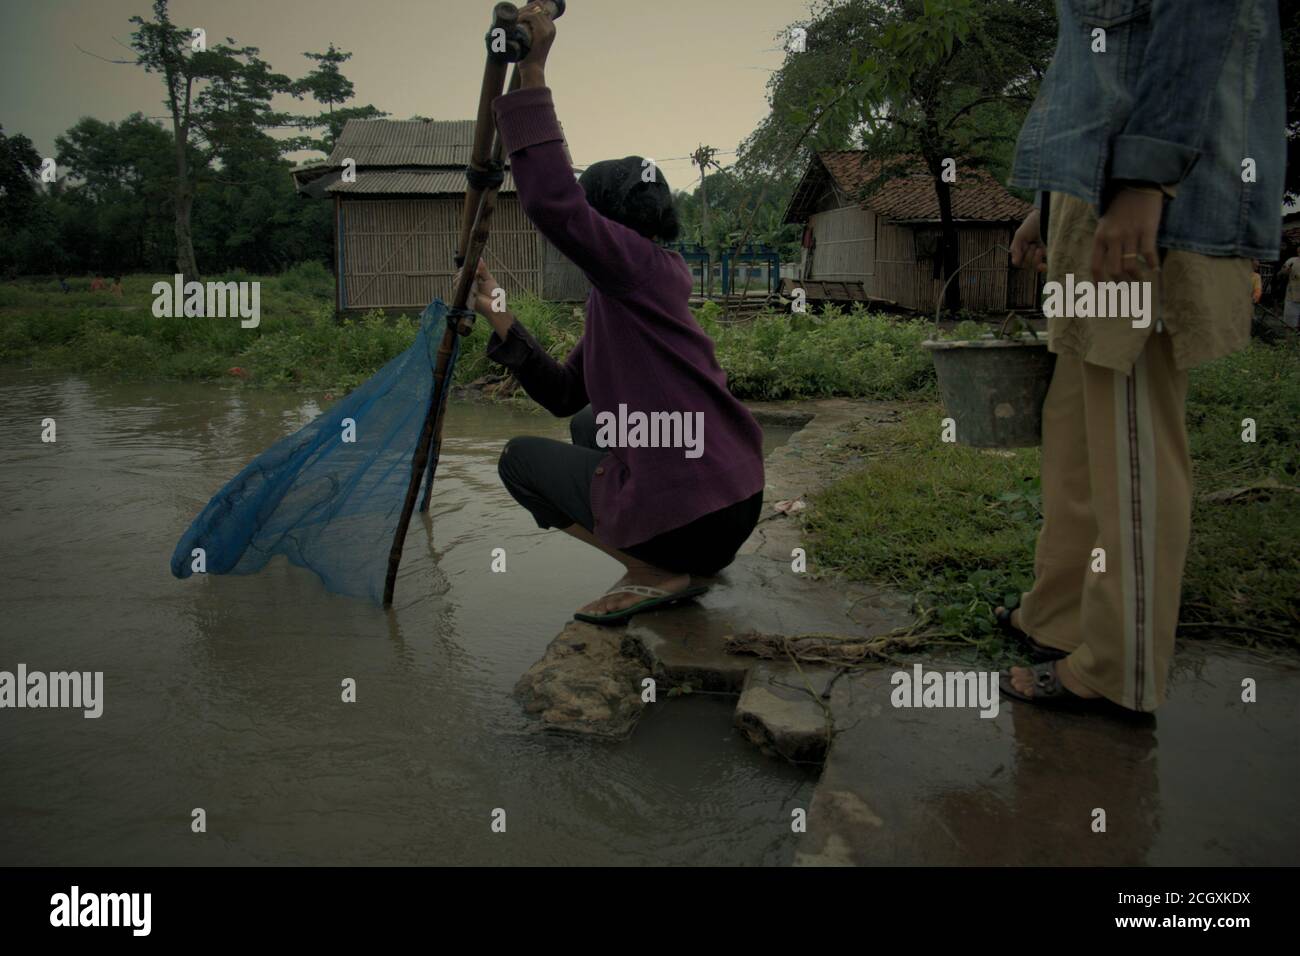 Una donna che maneggia il pushnet mentre un amico che trasporta il secchio di plastica che contiene i pesci presi mentre pescano su un canale di irrigazione a Karawang, Indonesia. Foto Stock